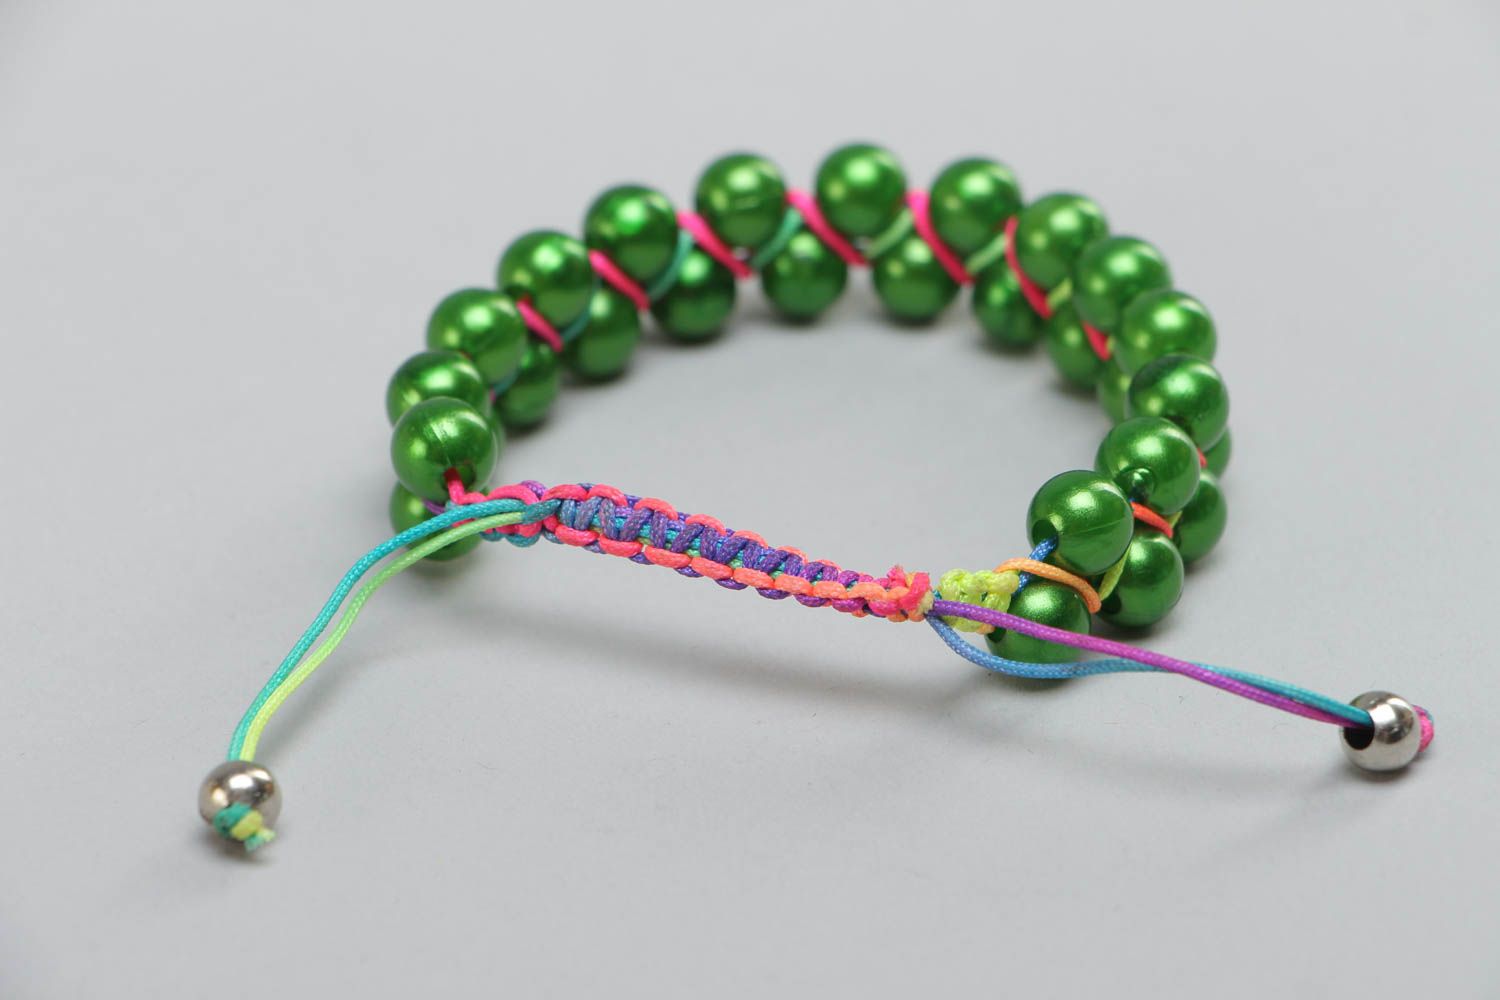 Exklusives handgemachtes grünes Armband mit Glaskugeln für stilvolle Looks foto 4